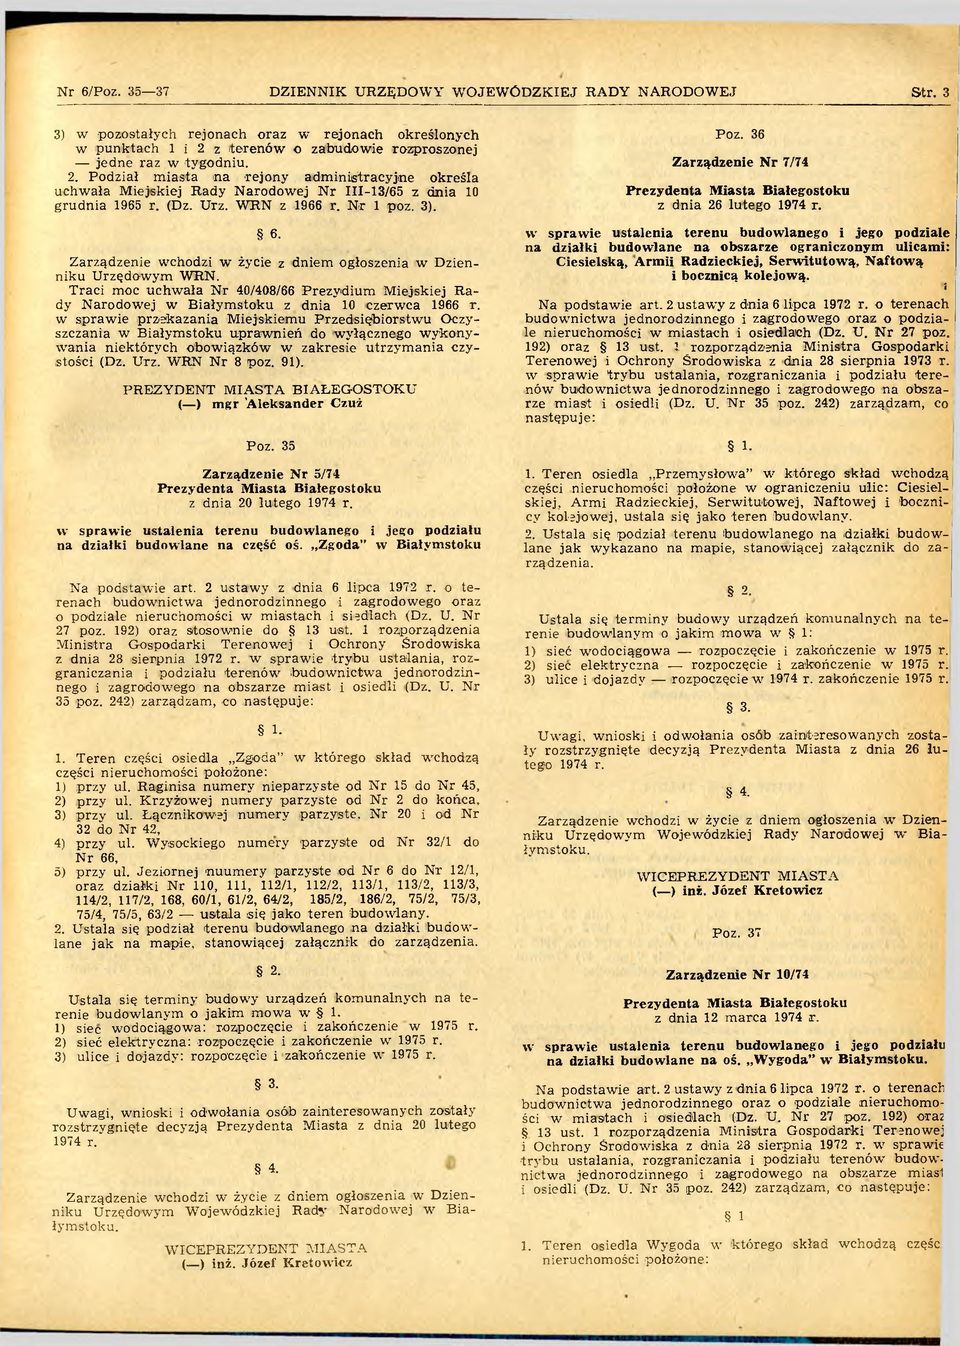 Traci moc uchw ała N r 40/408/66 P rezydium M iejskiej R a dy Narodowej w Białym stoku z dnia 10 czerwca 1966 r.